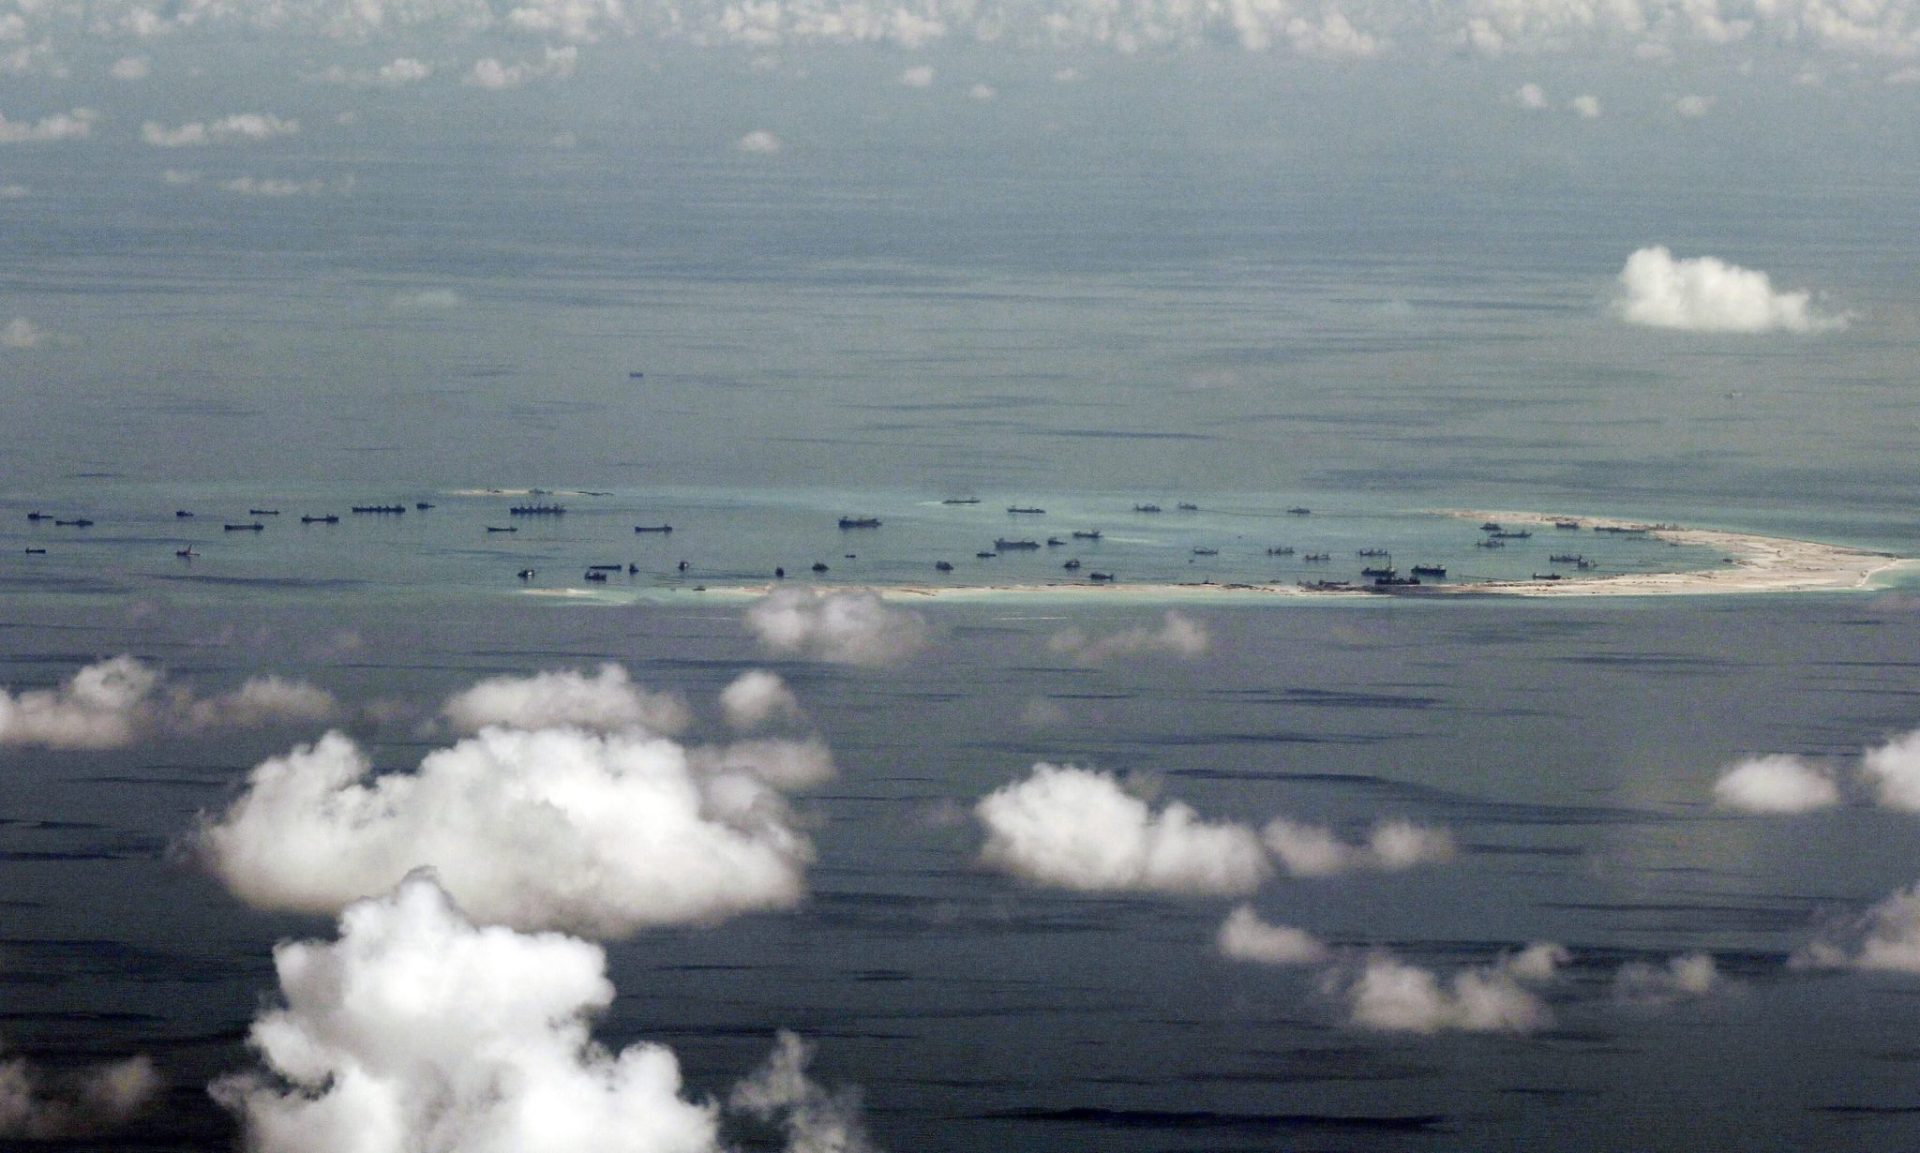 Vista aérea que muestra el arrecife en disputa en el mar de China.